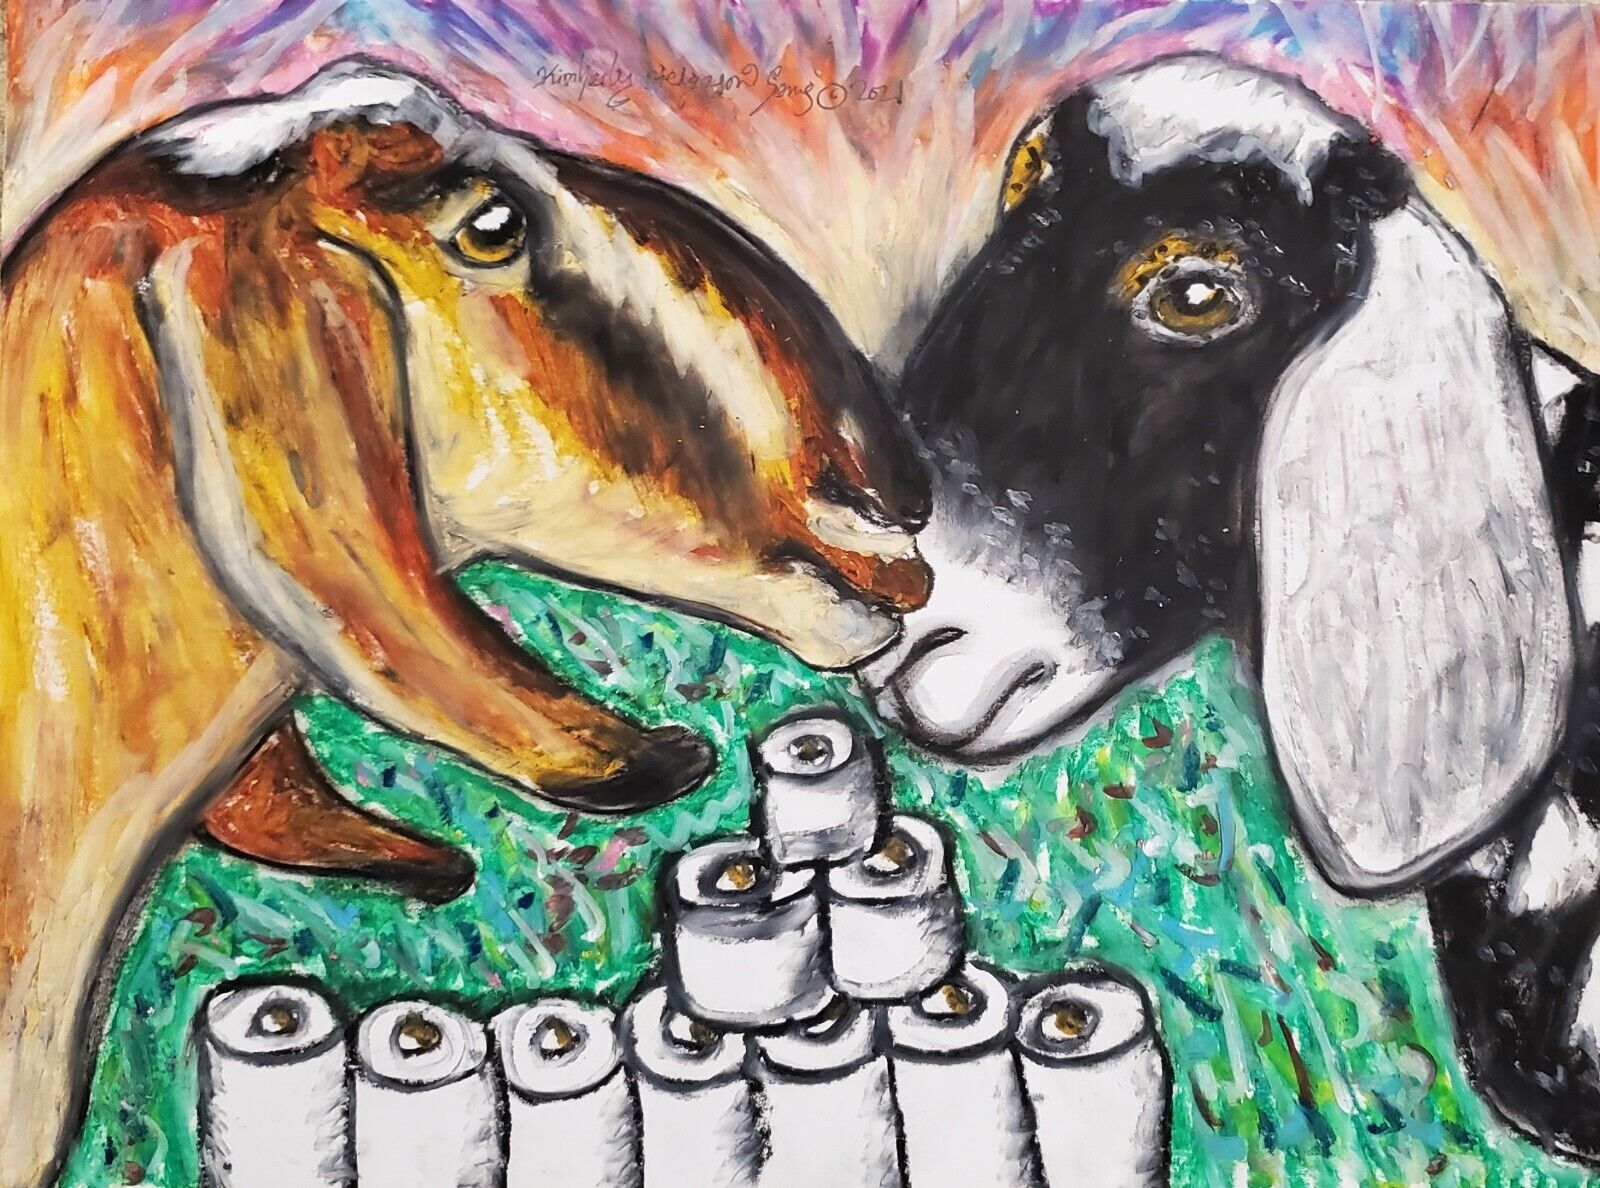 Nubian Goat 5 x 7 Art Print Signed Artist KSams Hoarding Toilet Paper Farm